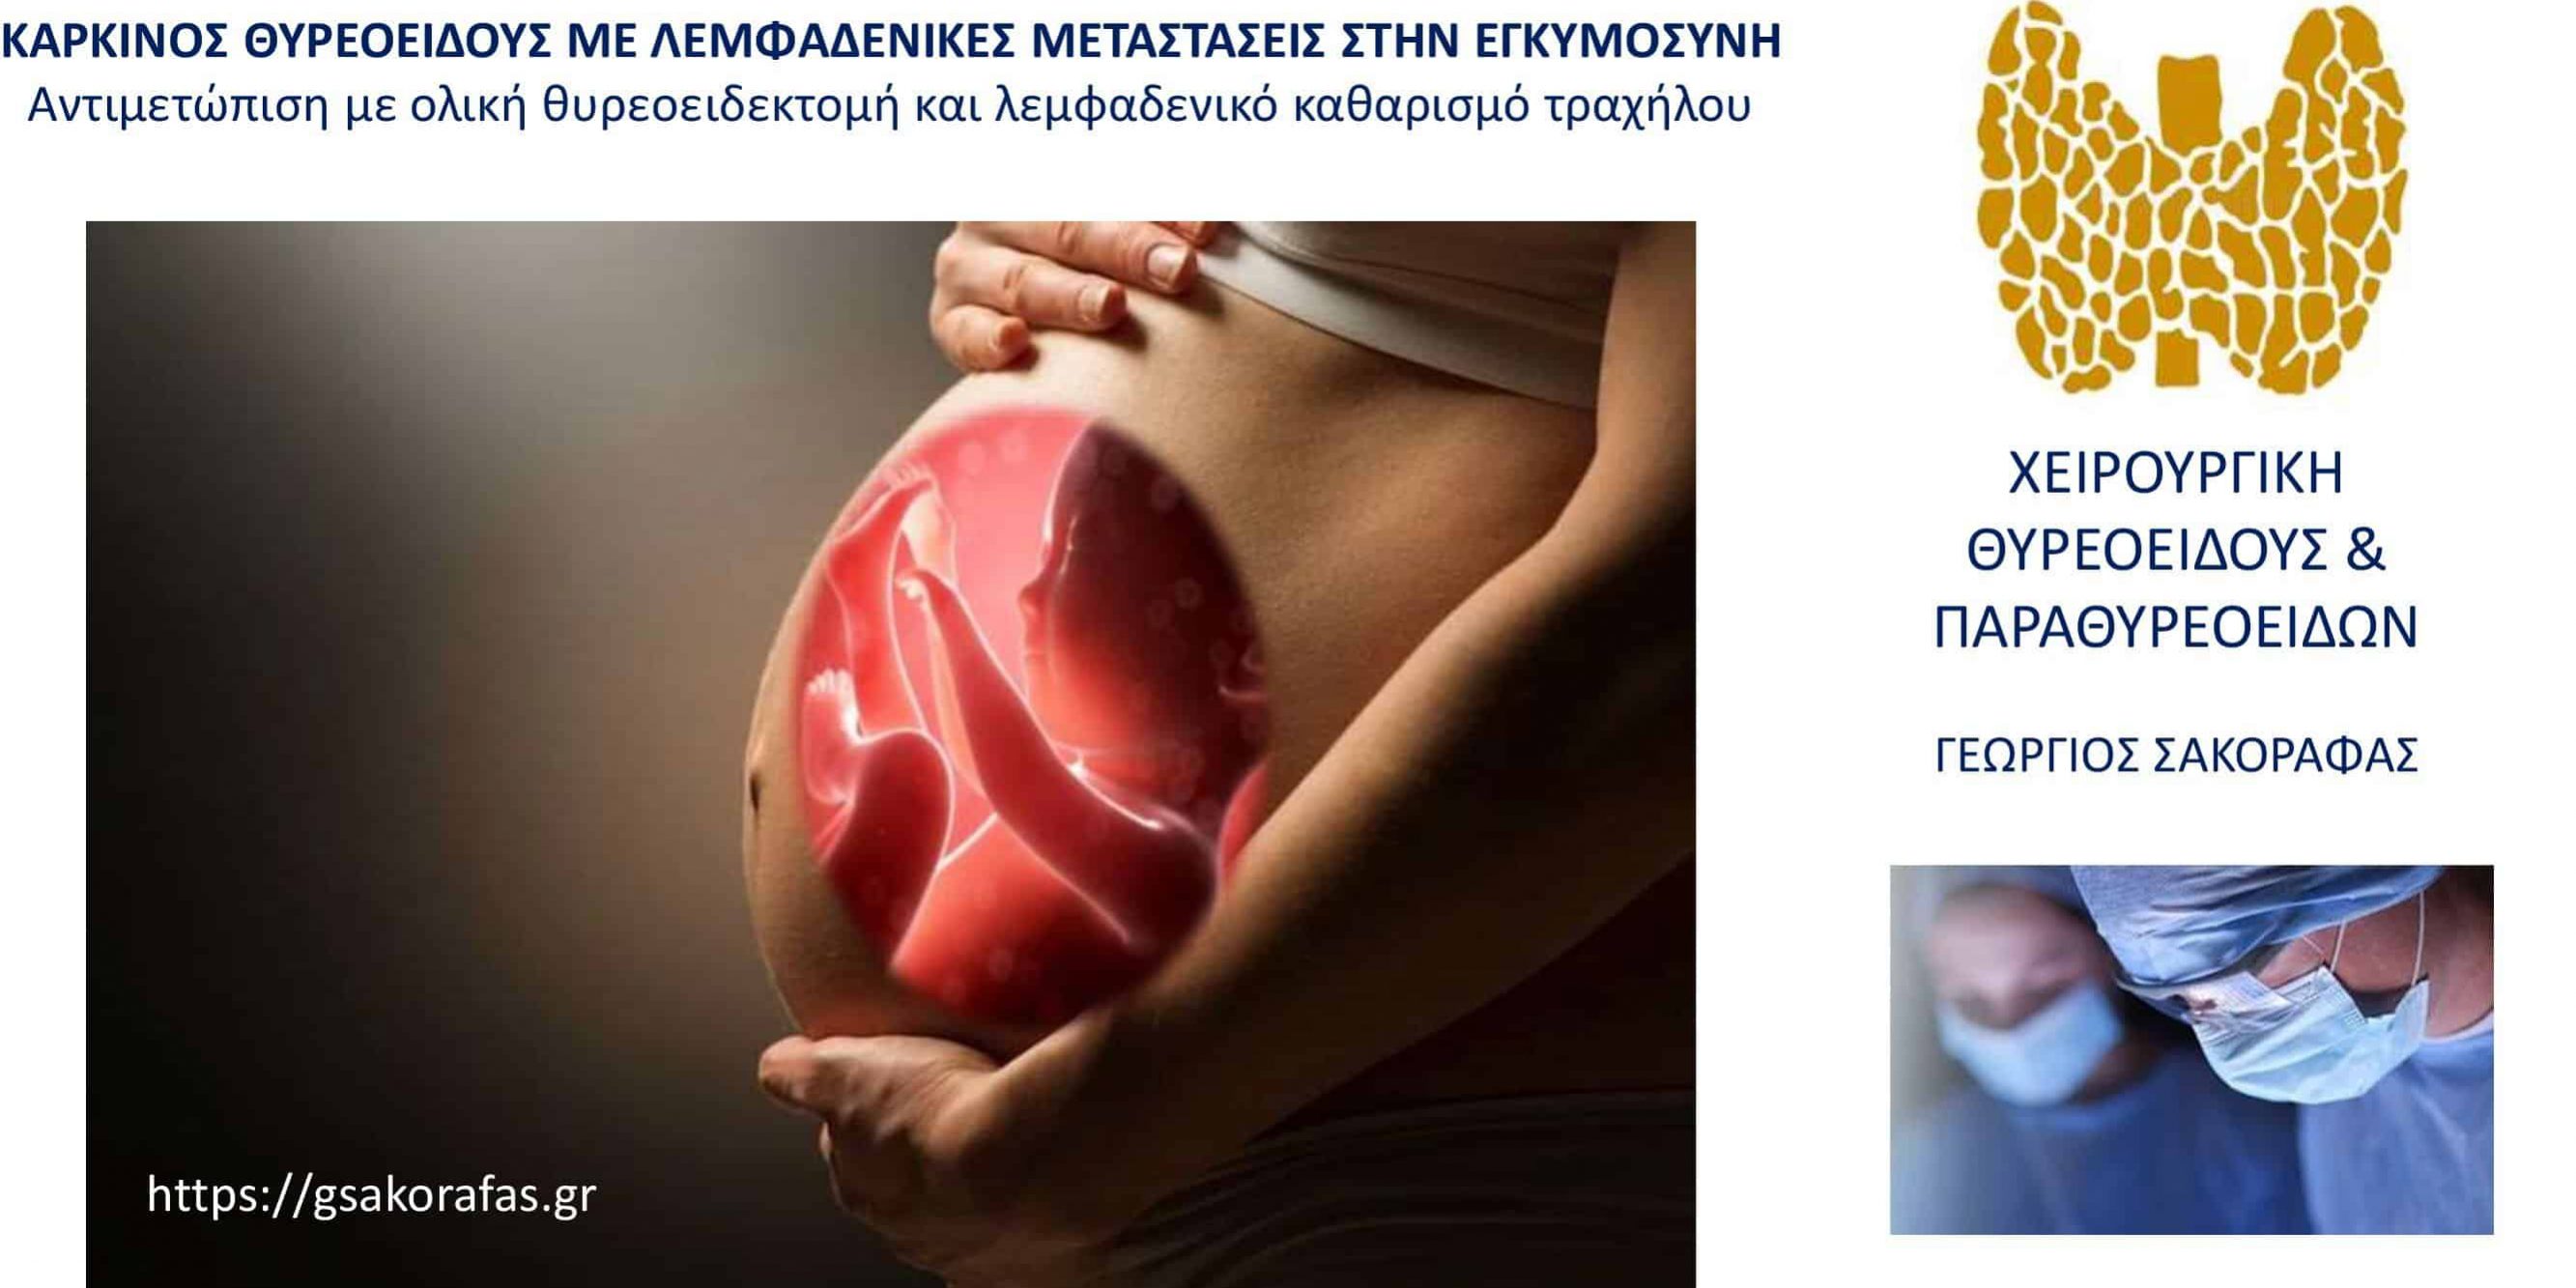 Καρκίνος θυρεοειδούς σε έγκυο γυναίκα – ολική θυρεοειδεκτομή και λεμφαδενικός καθαρισμός τραχήλου (με αφορμή 38χρονη ασθενή μας)